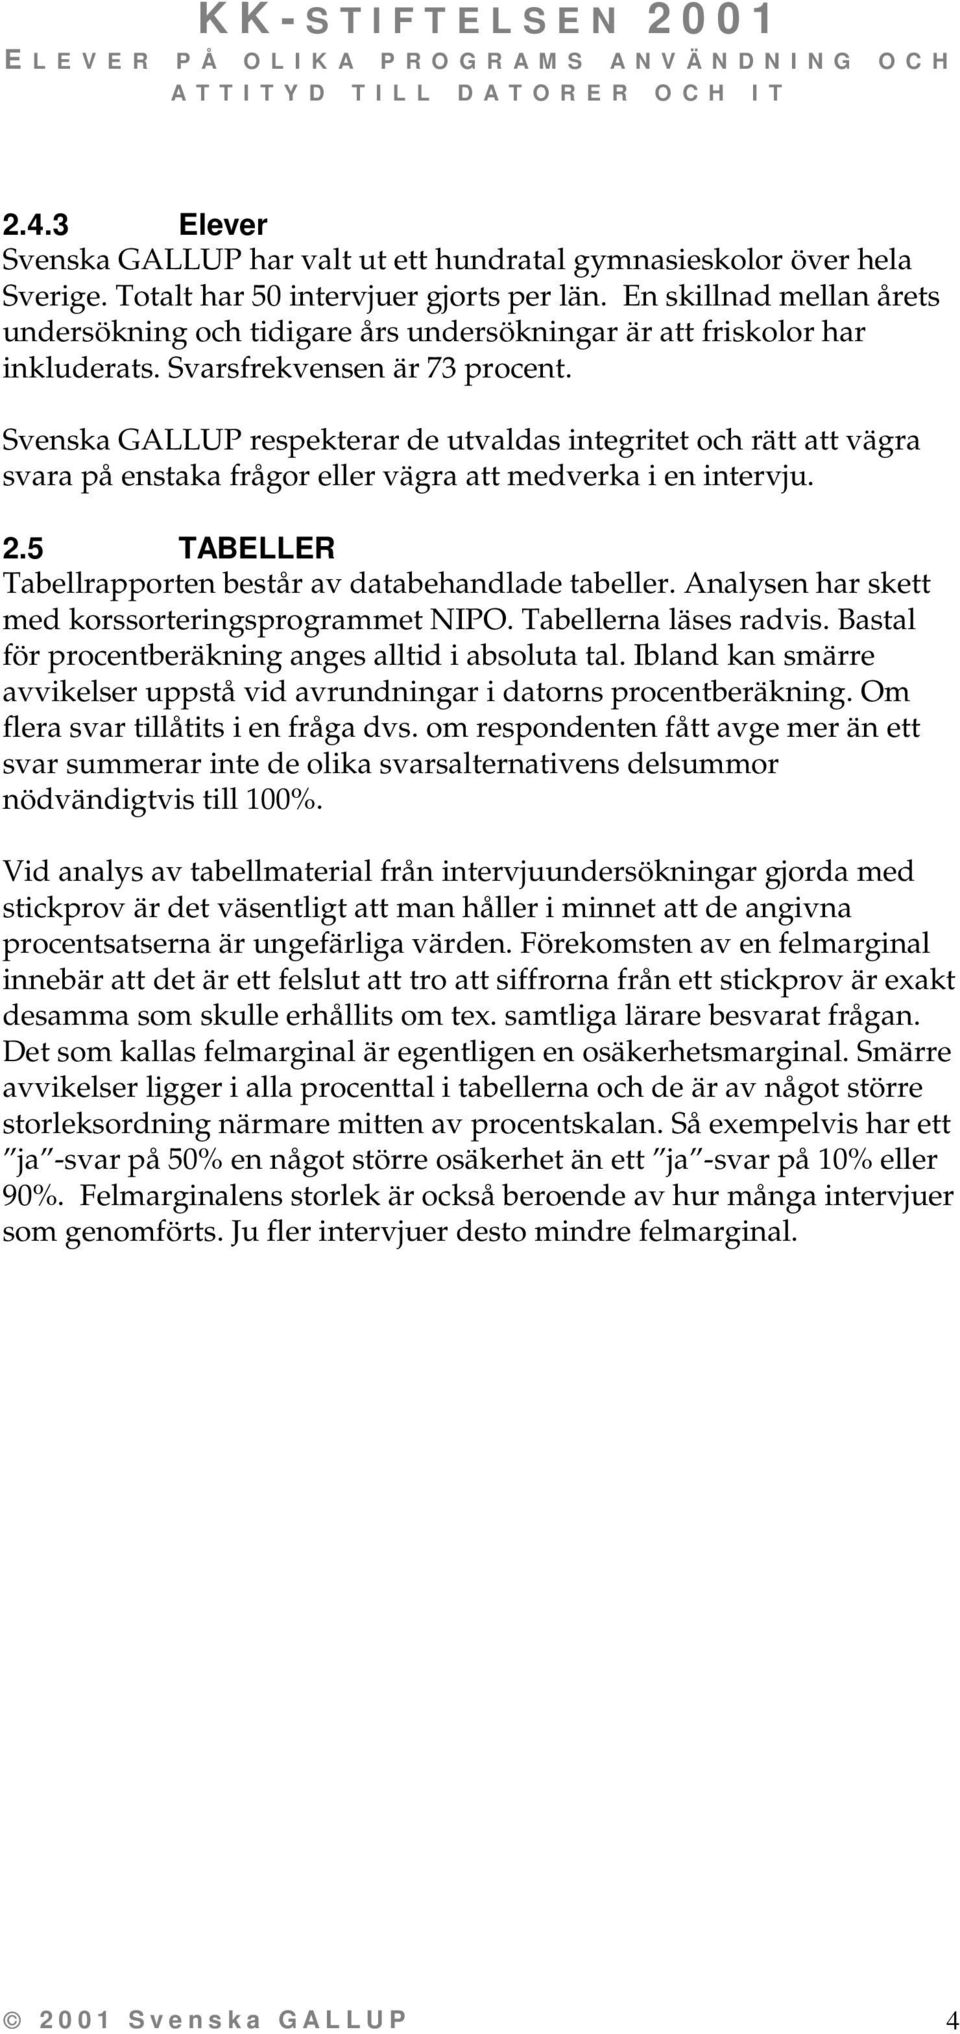 Svenska GALLUP respekterar de utvaldas integritet och rätt att vägra svara på enstaka frågor eller vägra att medverka i en intervju. 2.5 TABELLER Tabellrapporten består av databehandlade tabeller.